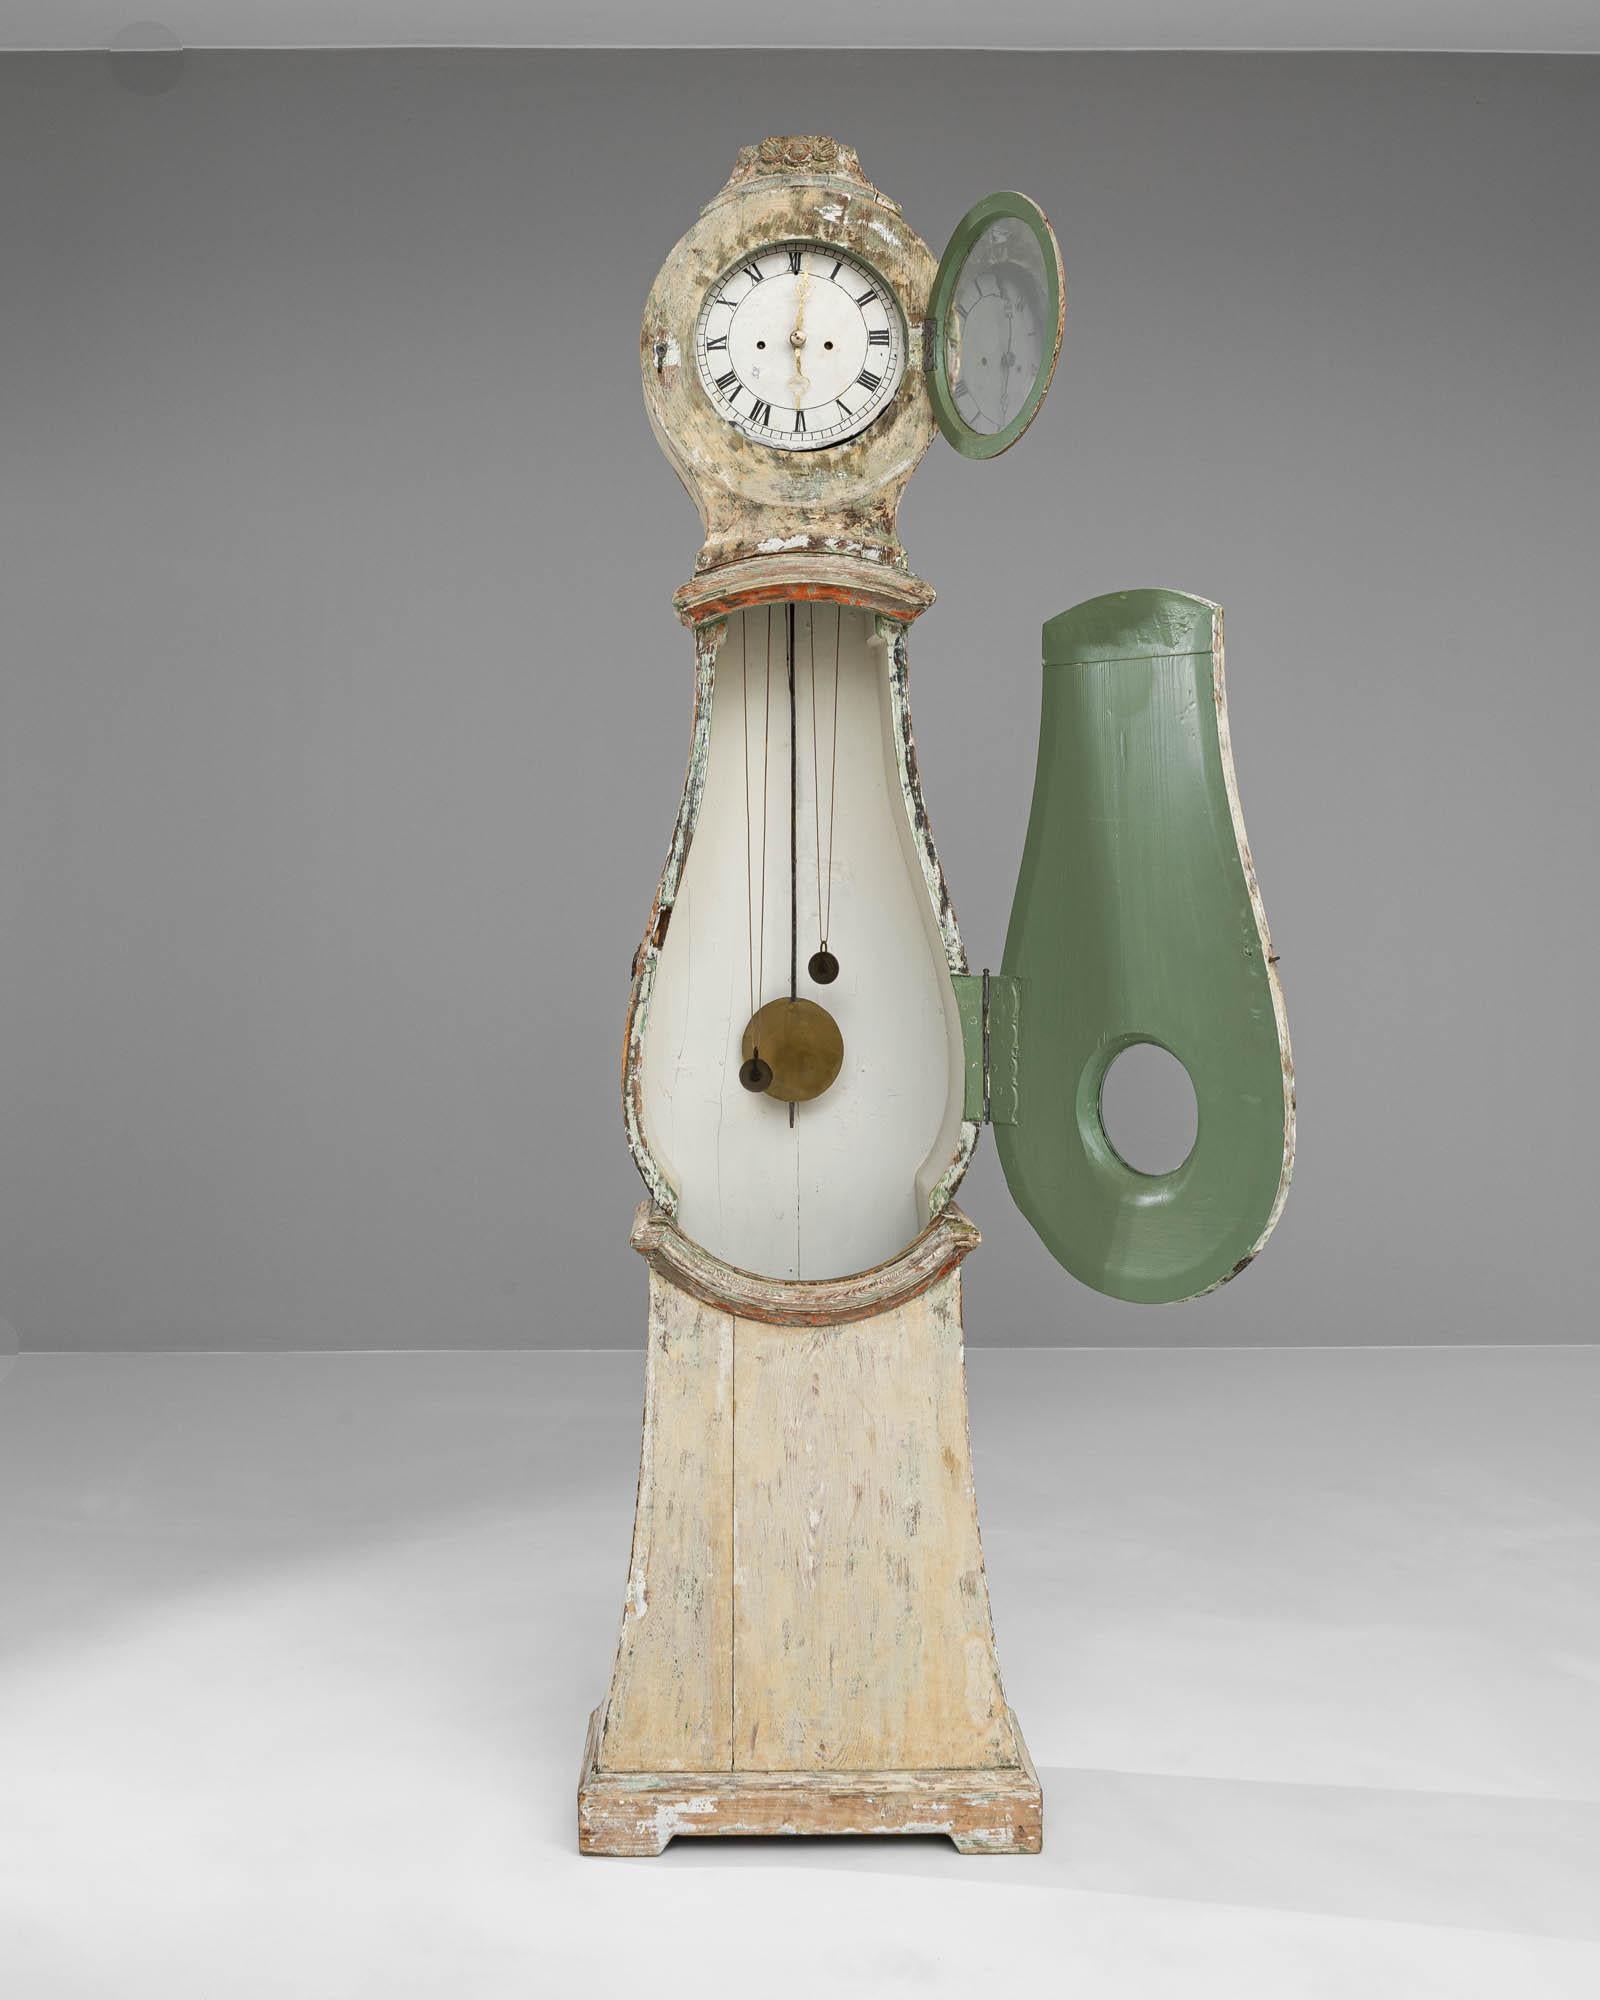 Cette horloge en bois suédoise du début du 19e siècle est une icône durable de l'élégance et de l'artisanat antique. Le corps de l'horloge est peint dans une teinte délicate et délavée, rappelant la patine qui se forme gracieusement au fil du temps